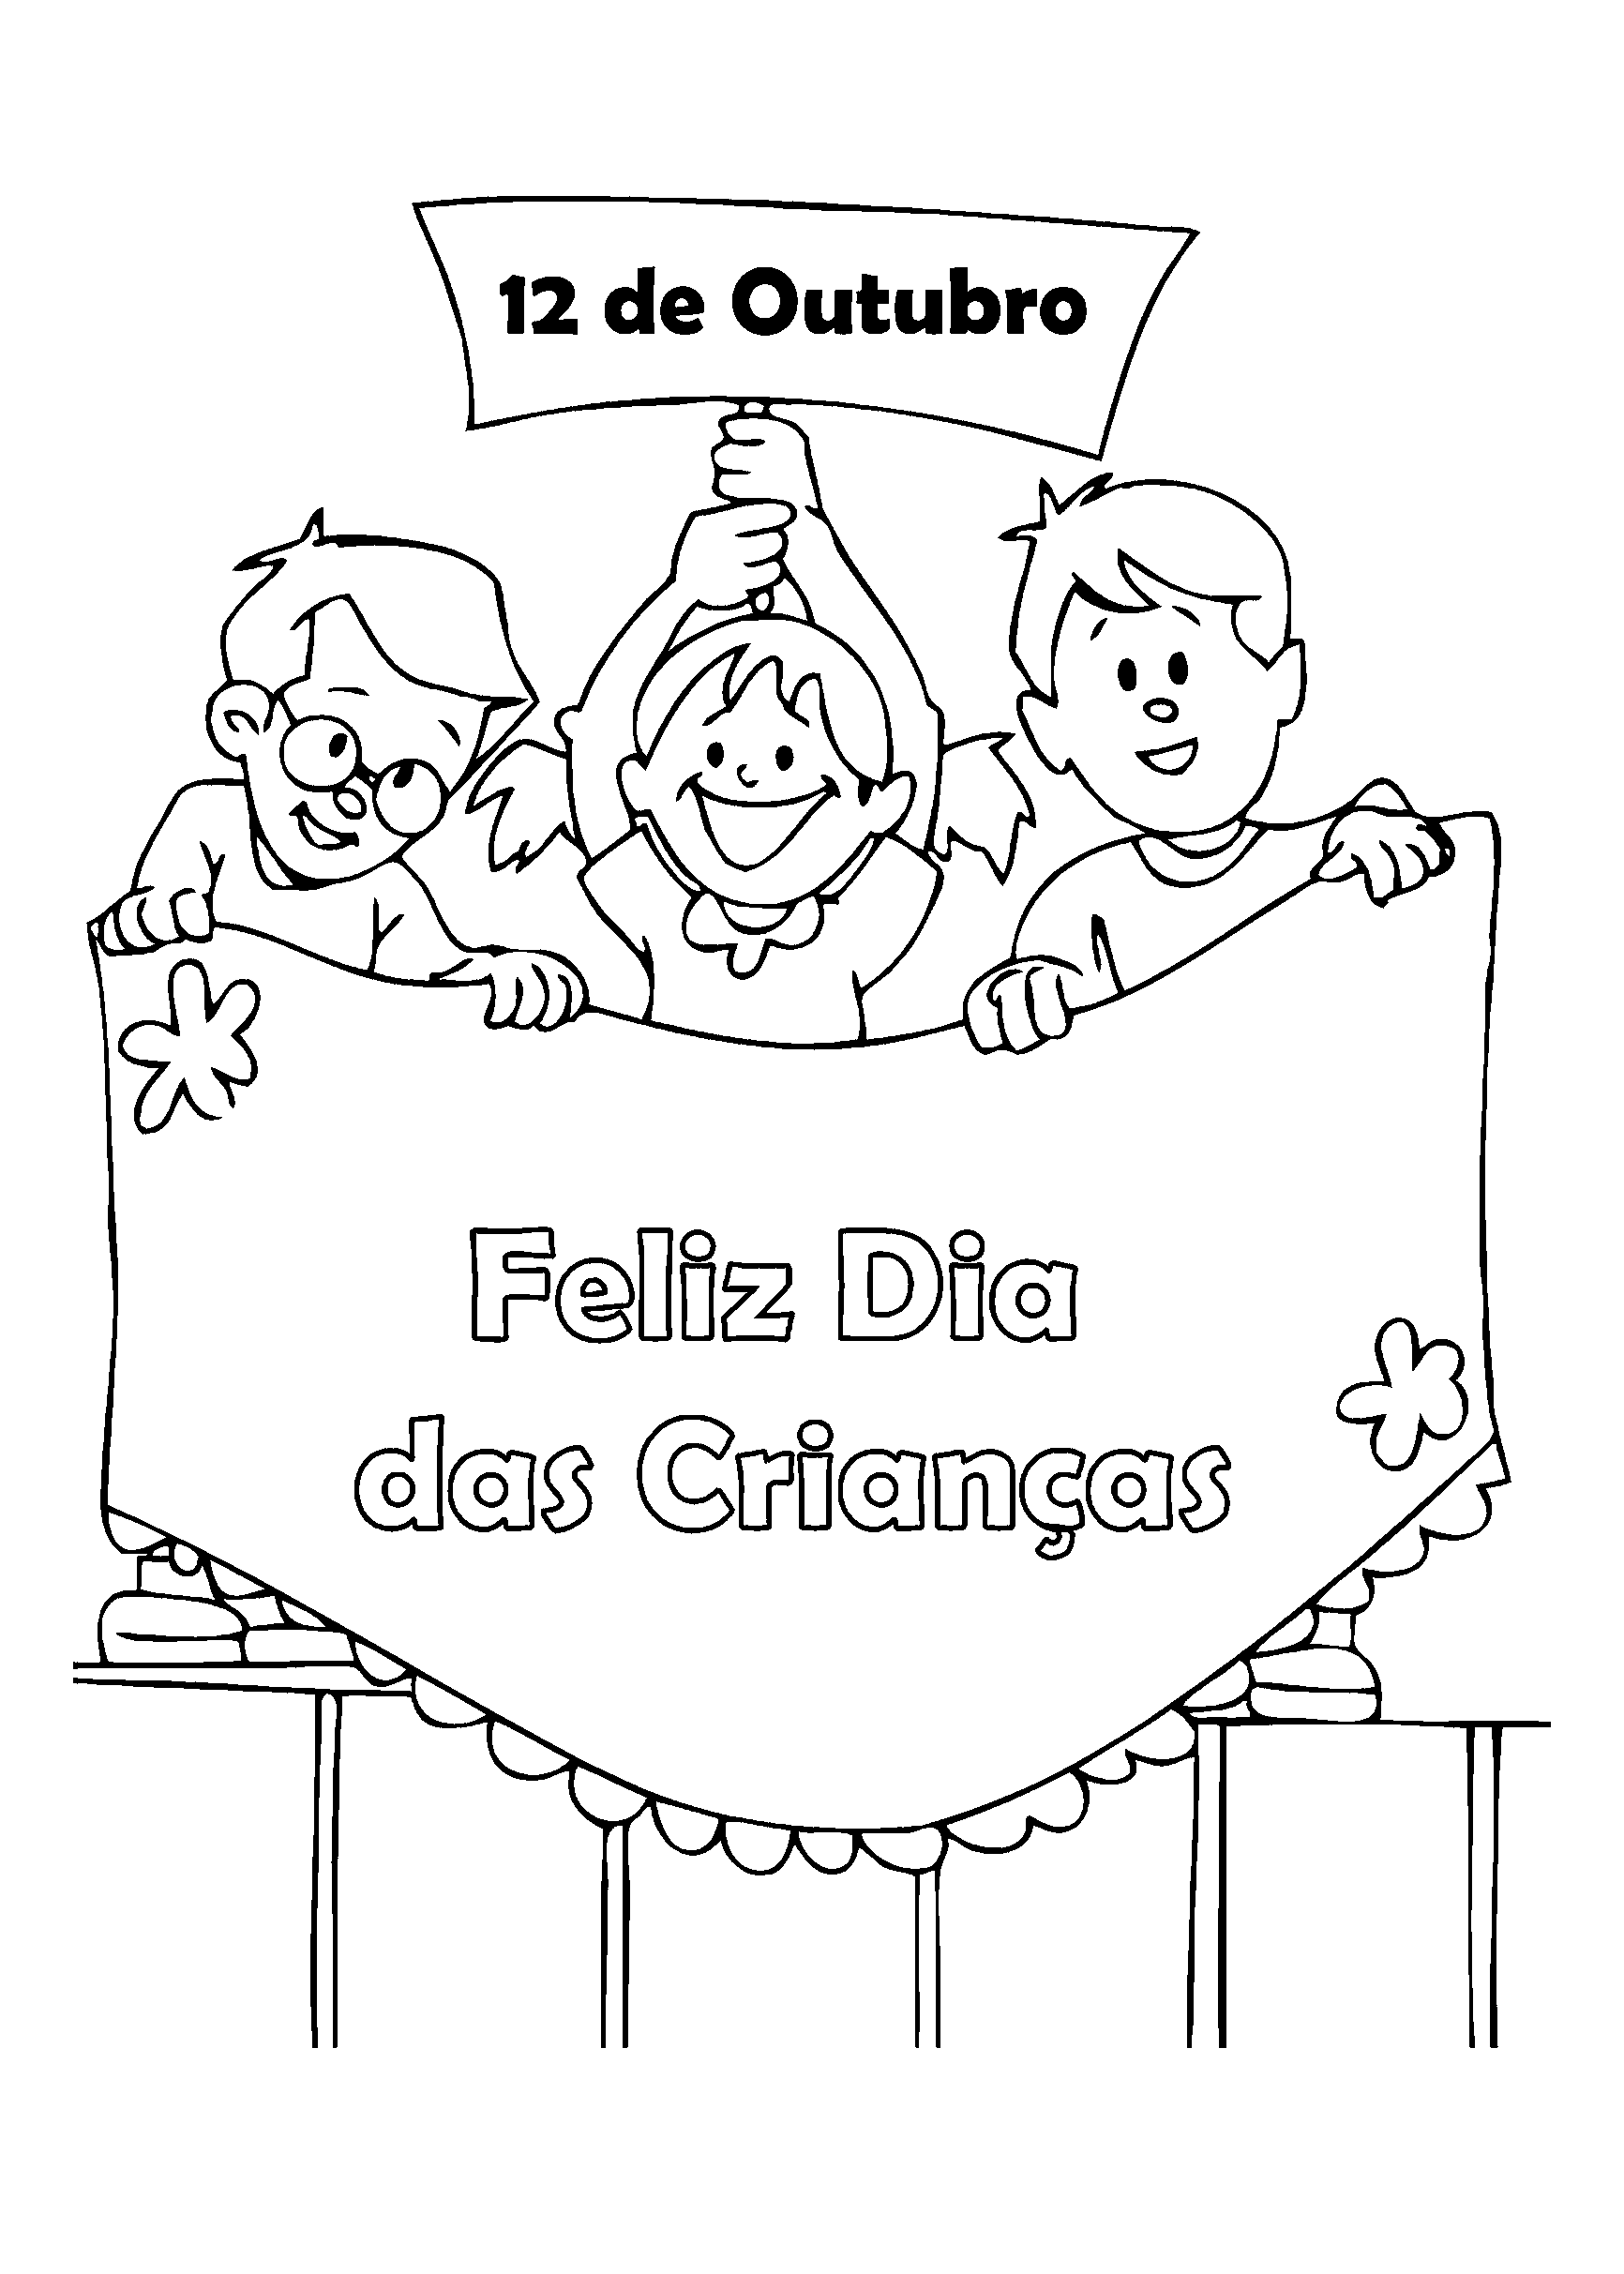 0267-desenho-dia-criancas-data-faixa